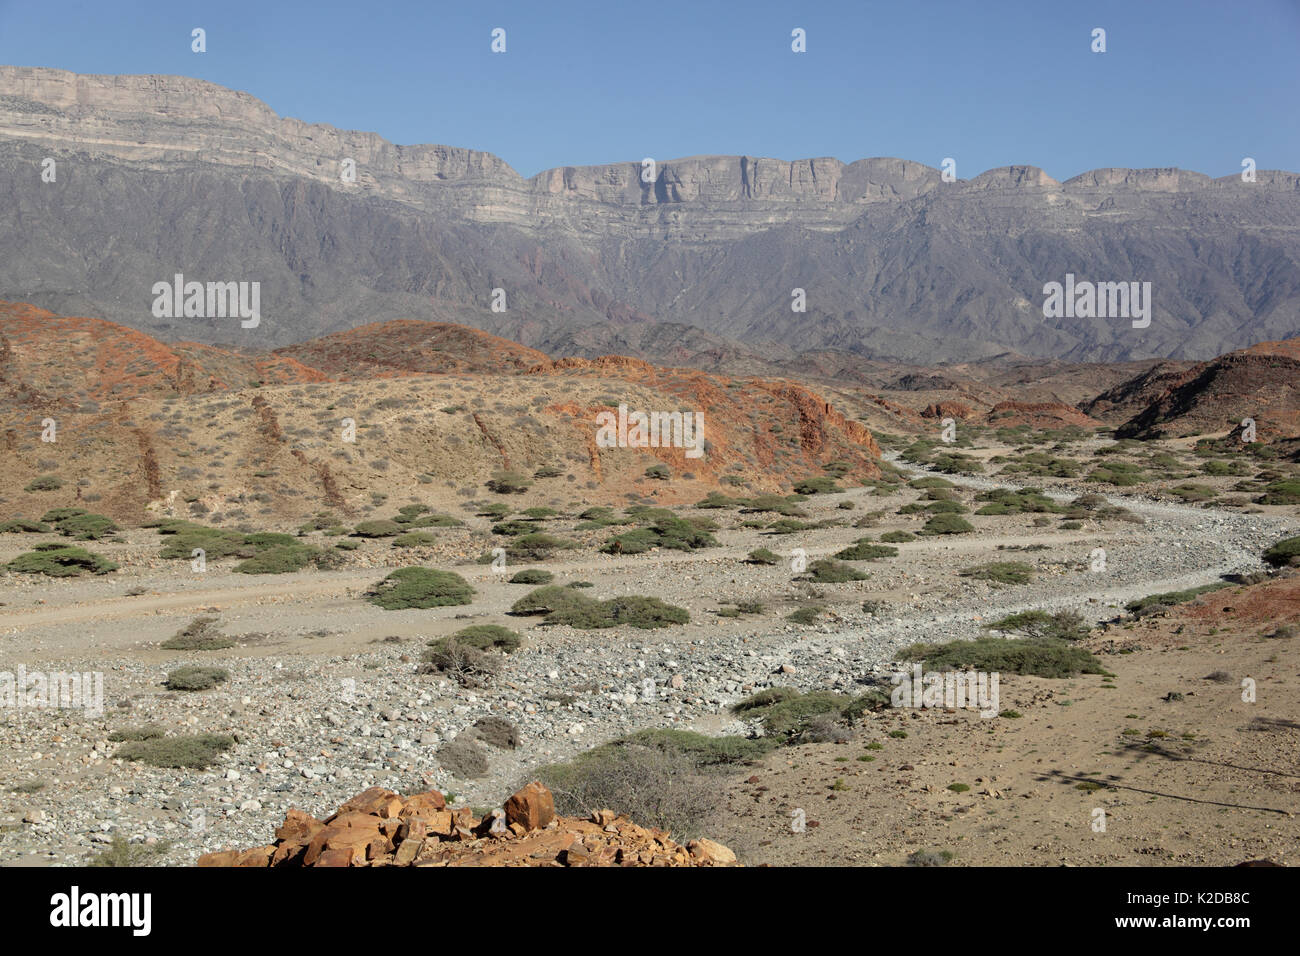 Jabal Samhan, montagnes et wadi (lit de rivière à sec), Oman, décembre 2012 Banque D'Images